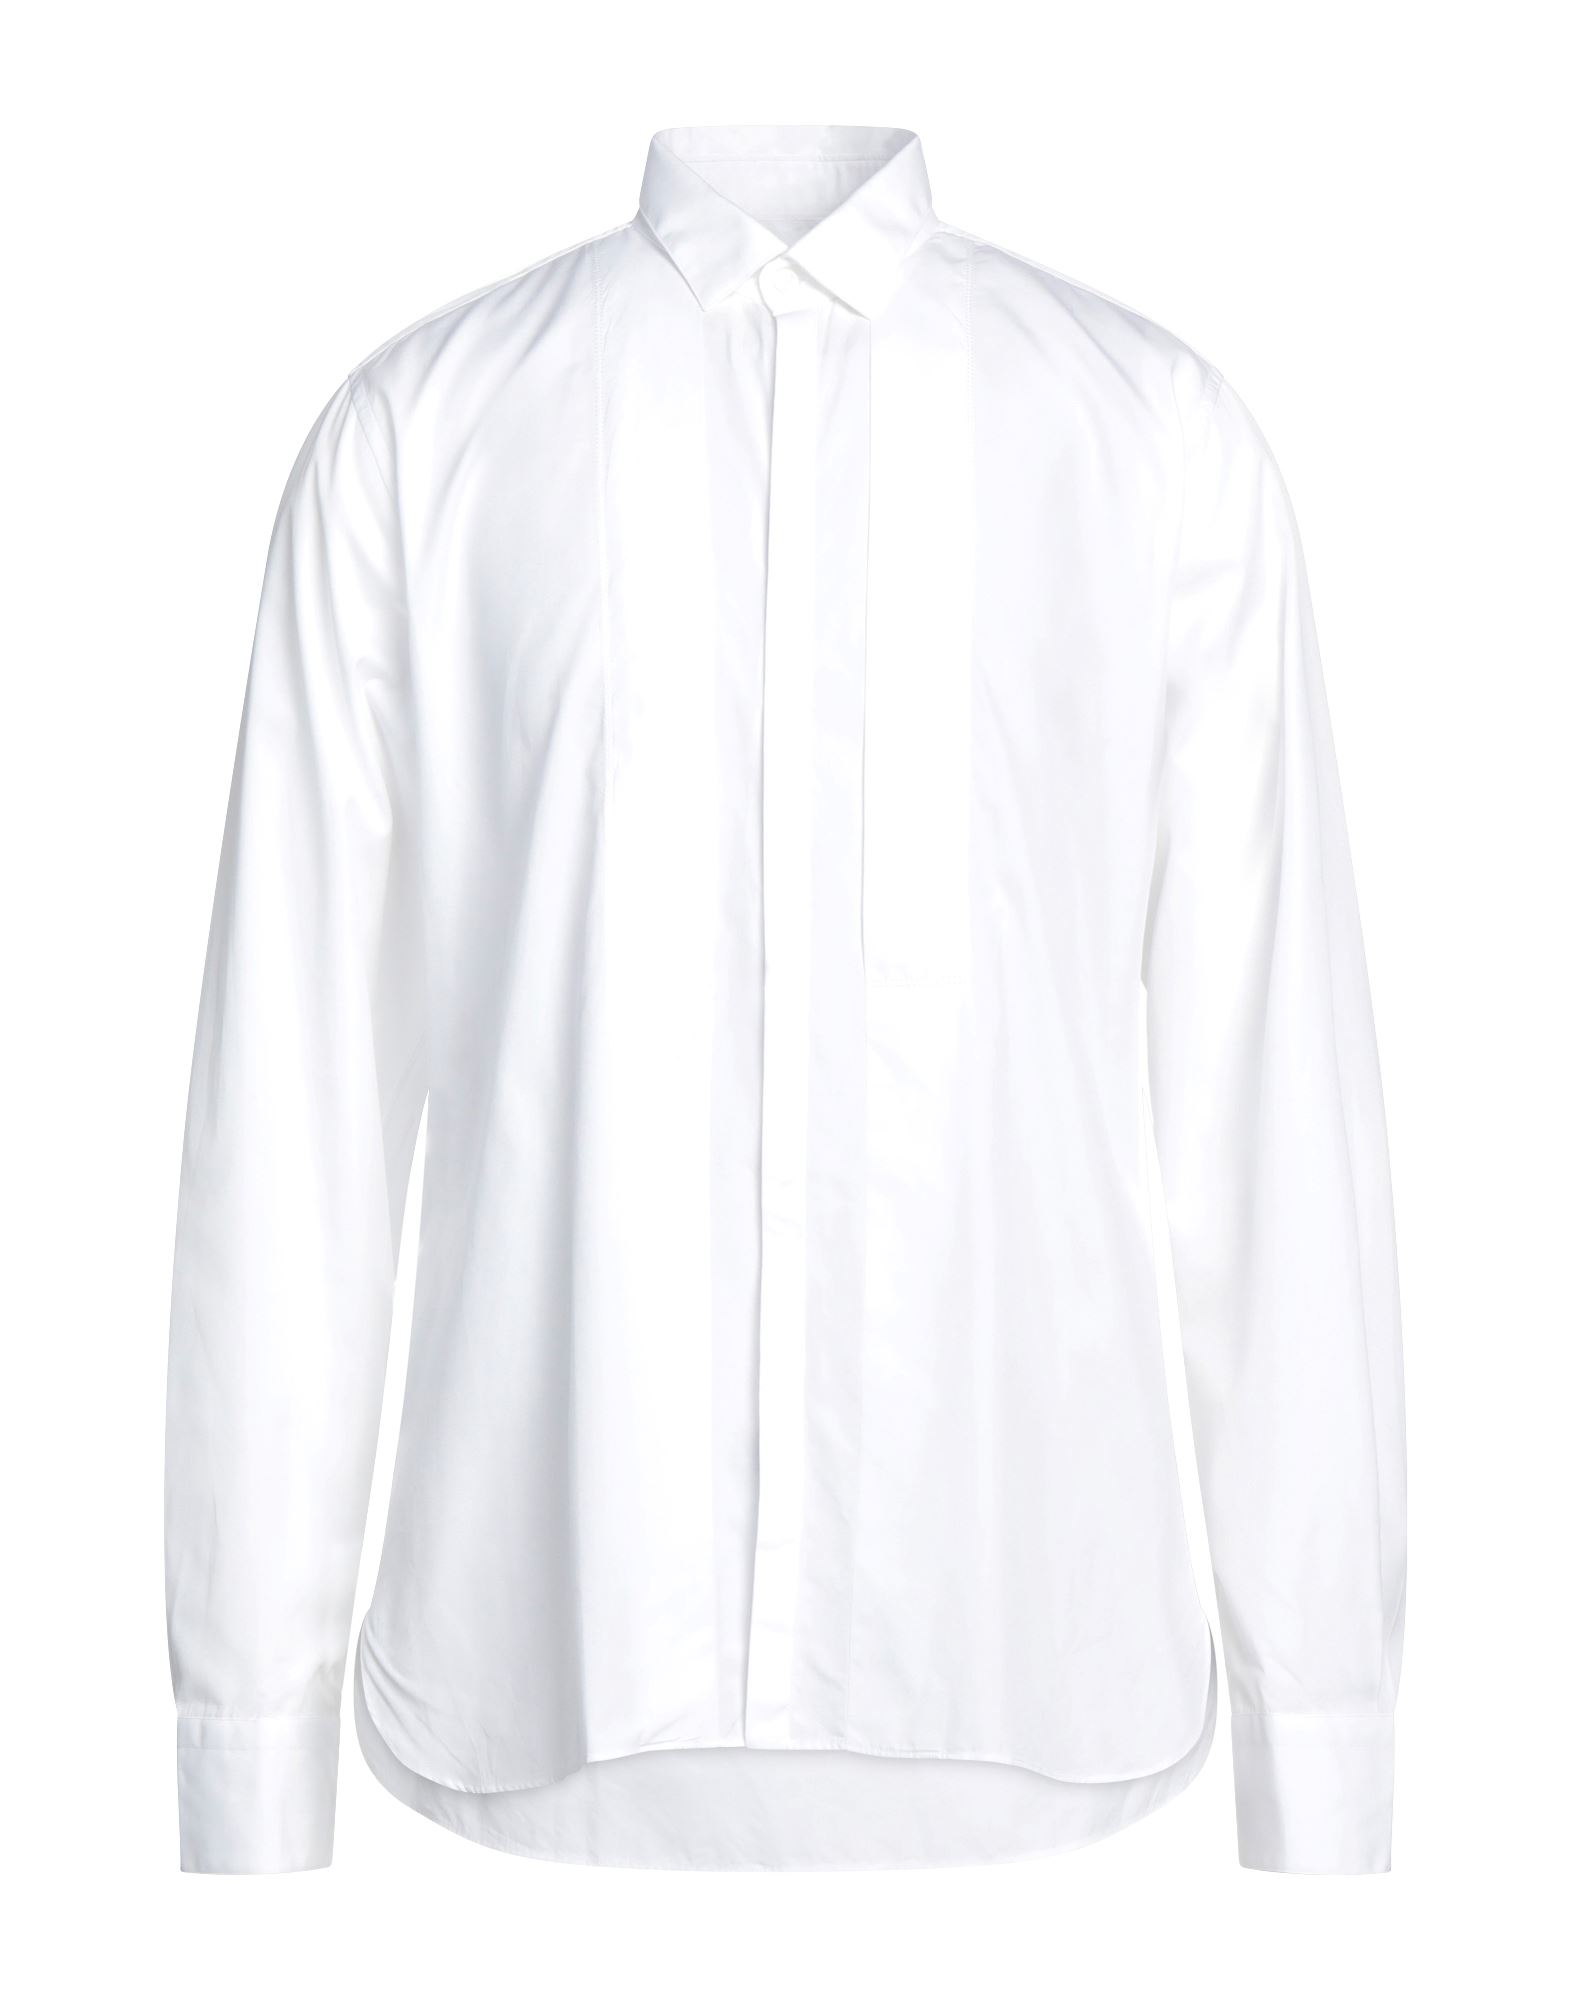 ランバン(LANVIN) メンズシャツ・ワイシャツ | 通販・人気ランキング 